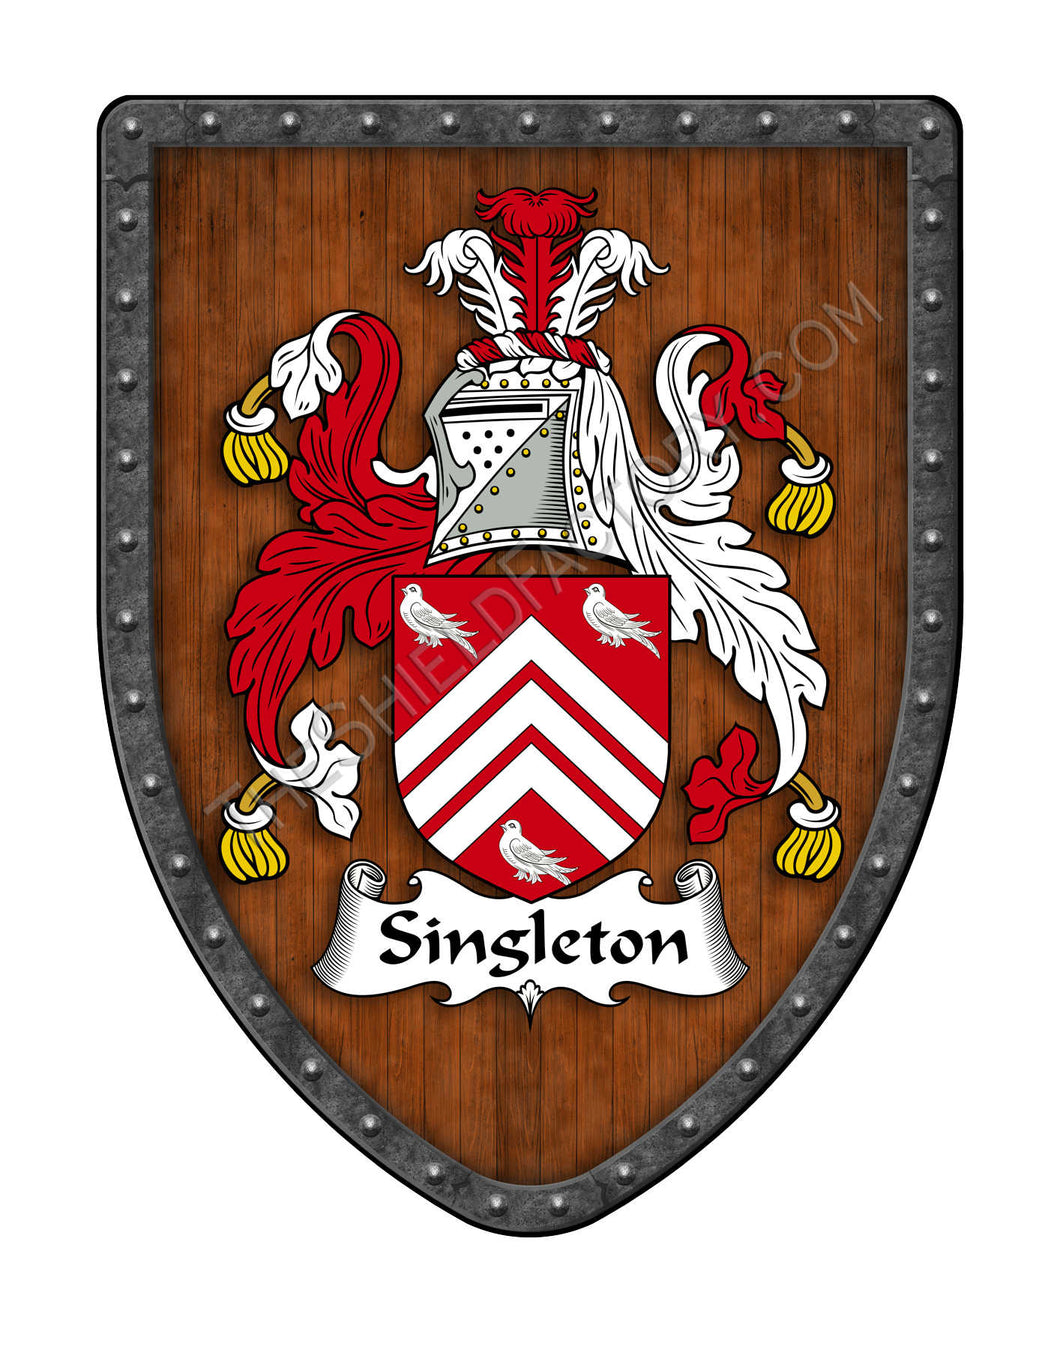 Singleton